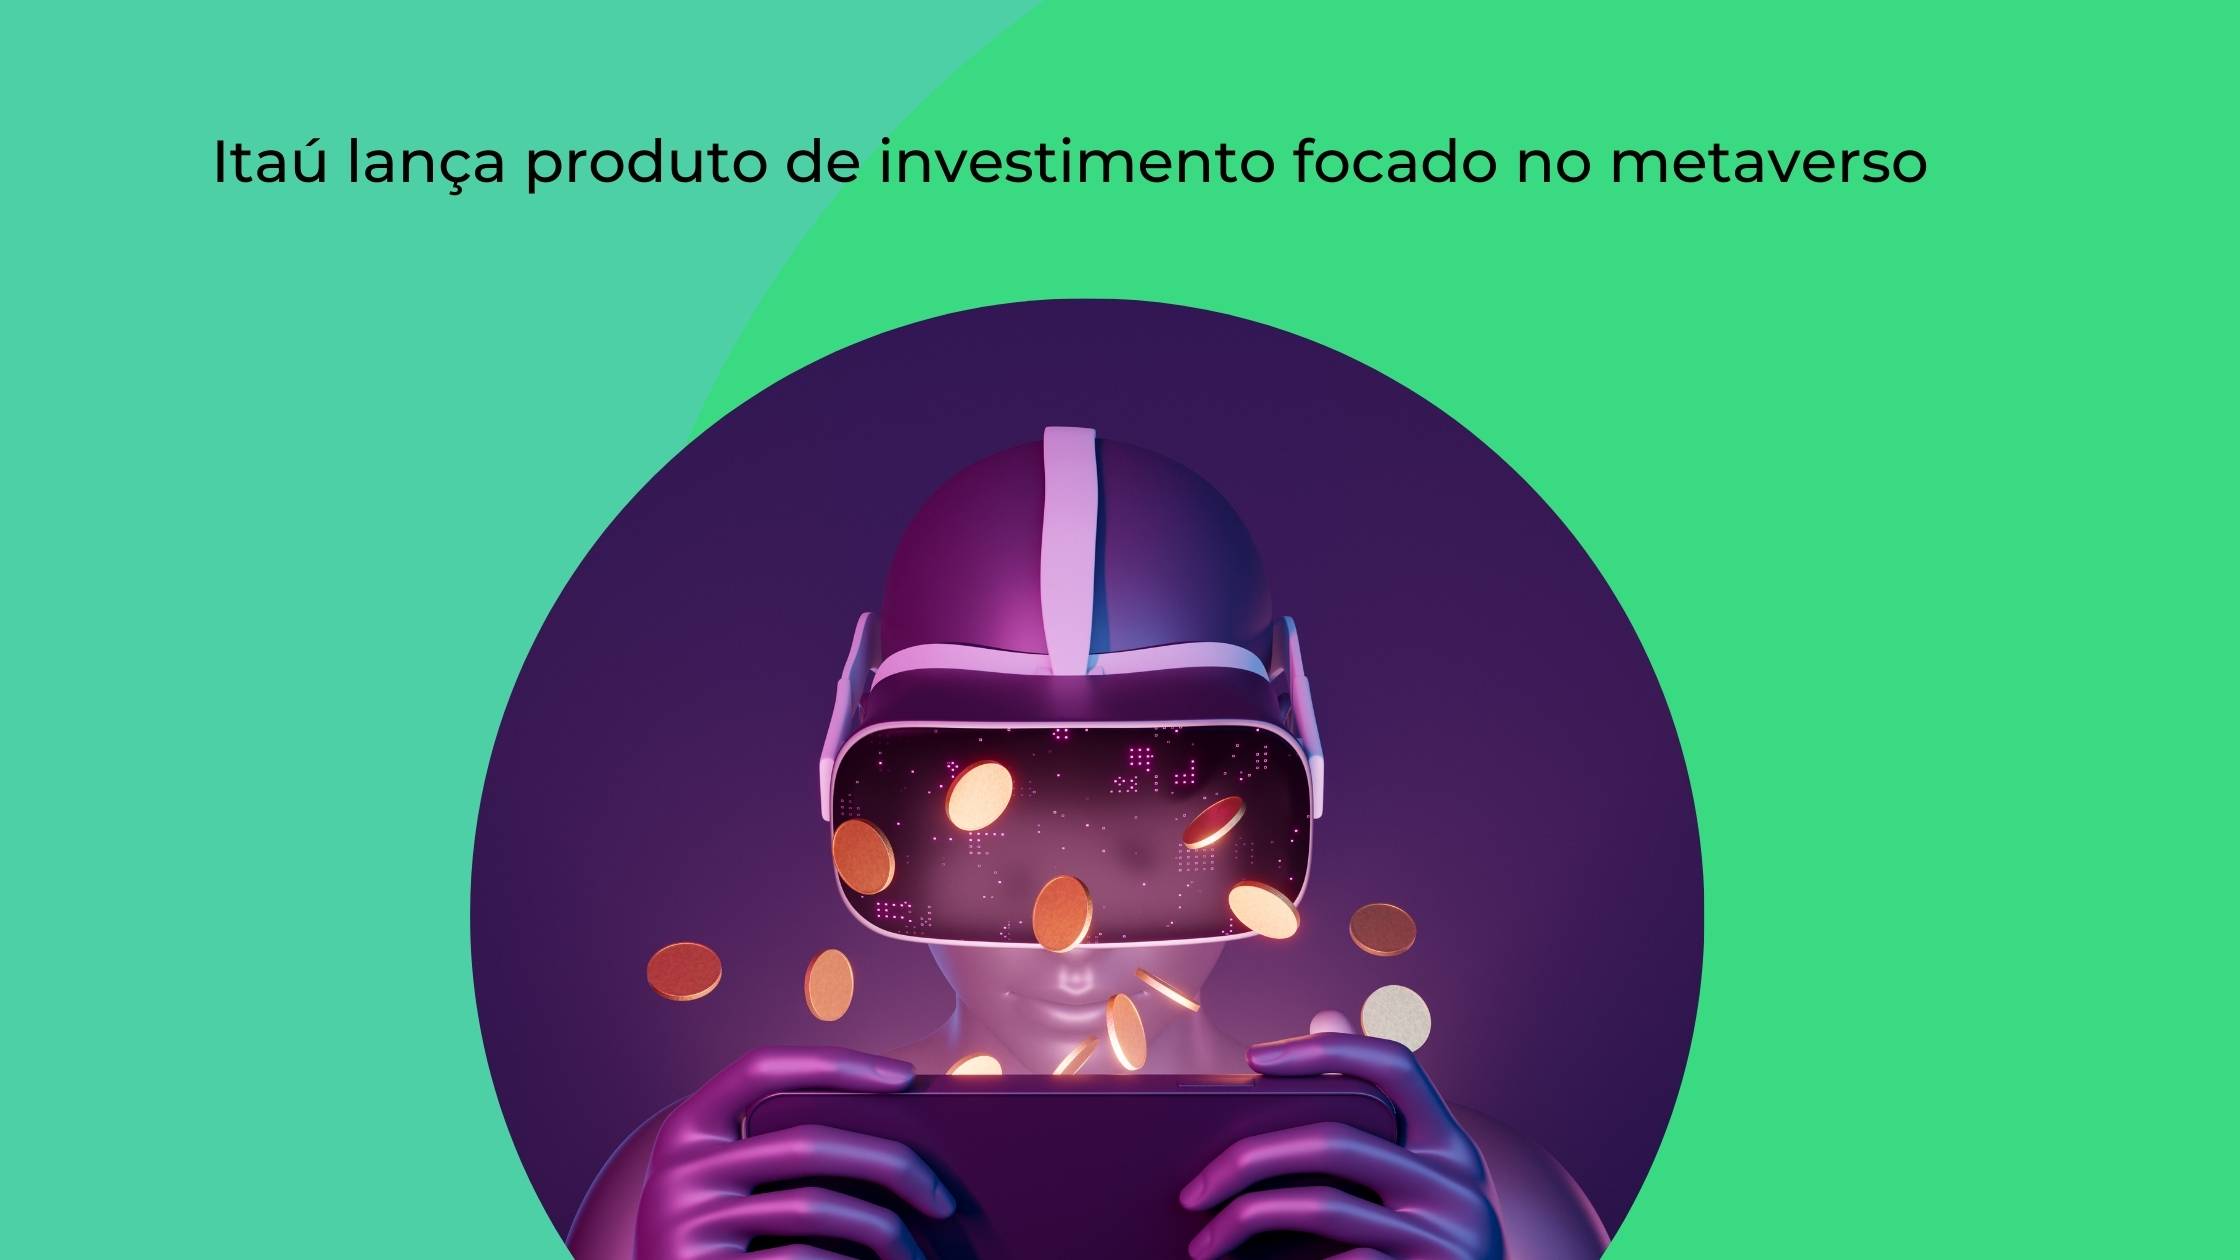 Itaú lança produto de investimento focado no metaverso